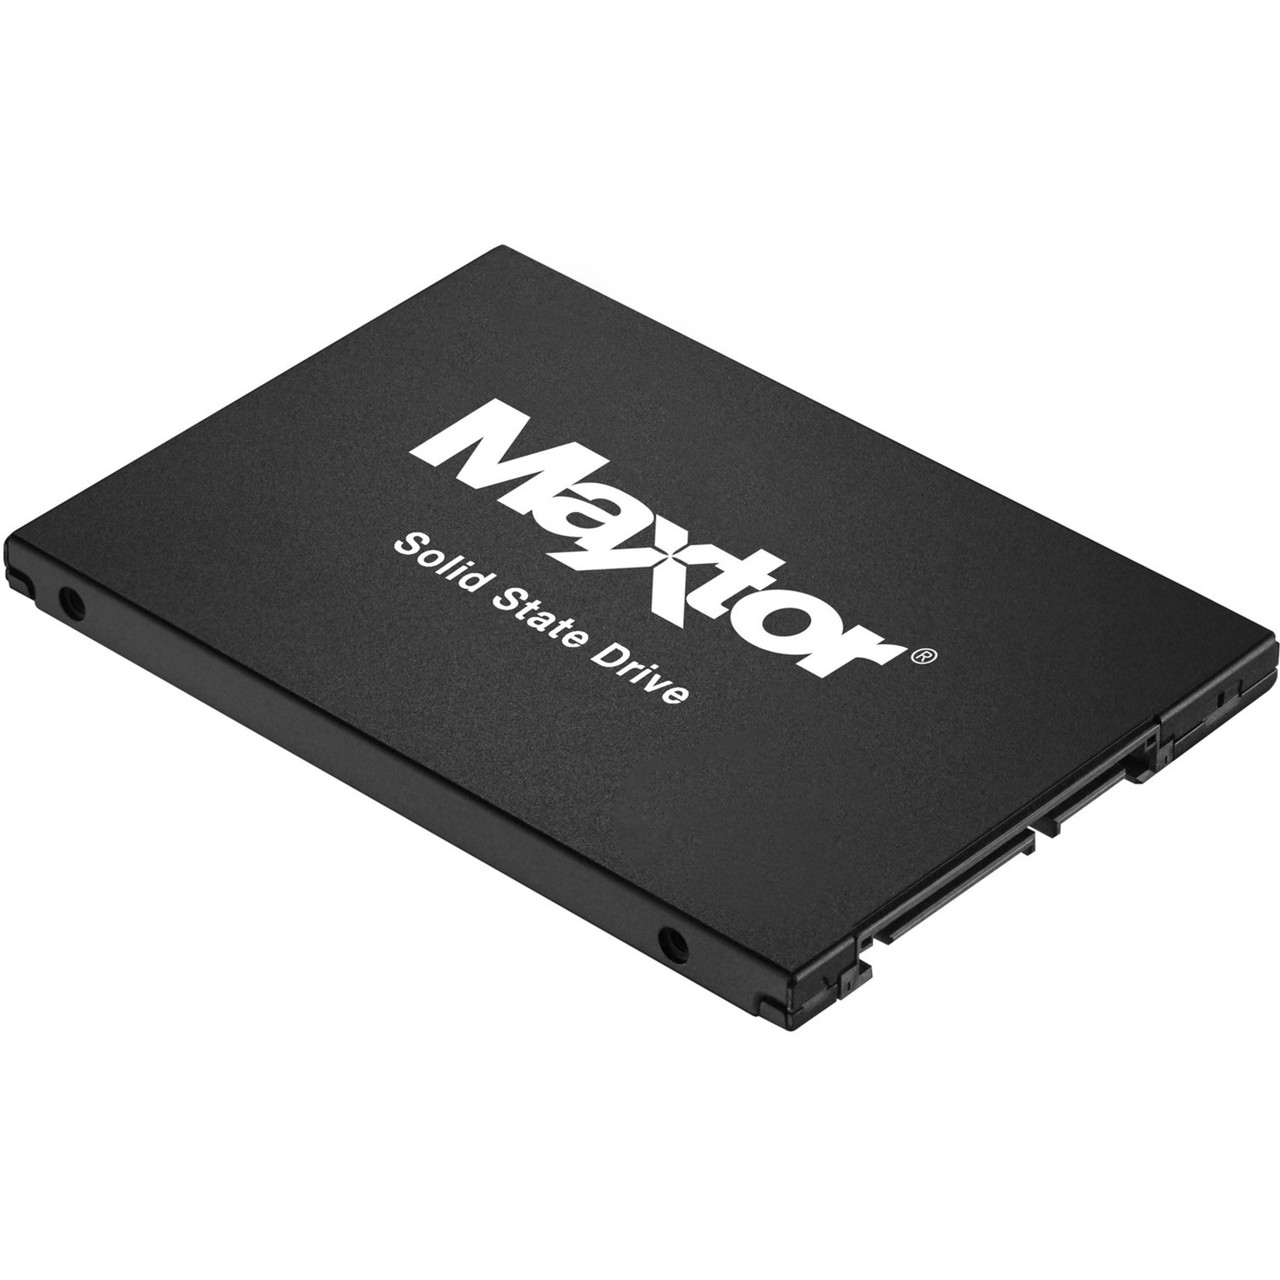 Maxtor Z1 YA240VC1A001 240 GB Solid State Drive - 2.5" Internal - SATA